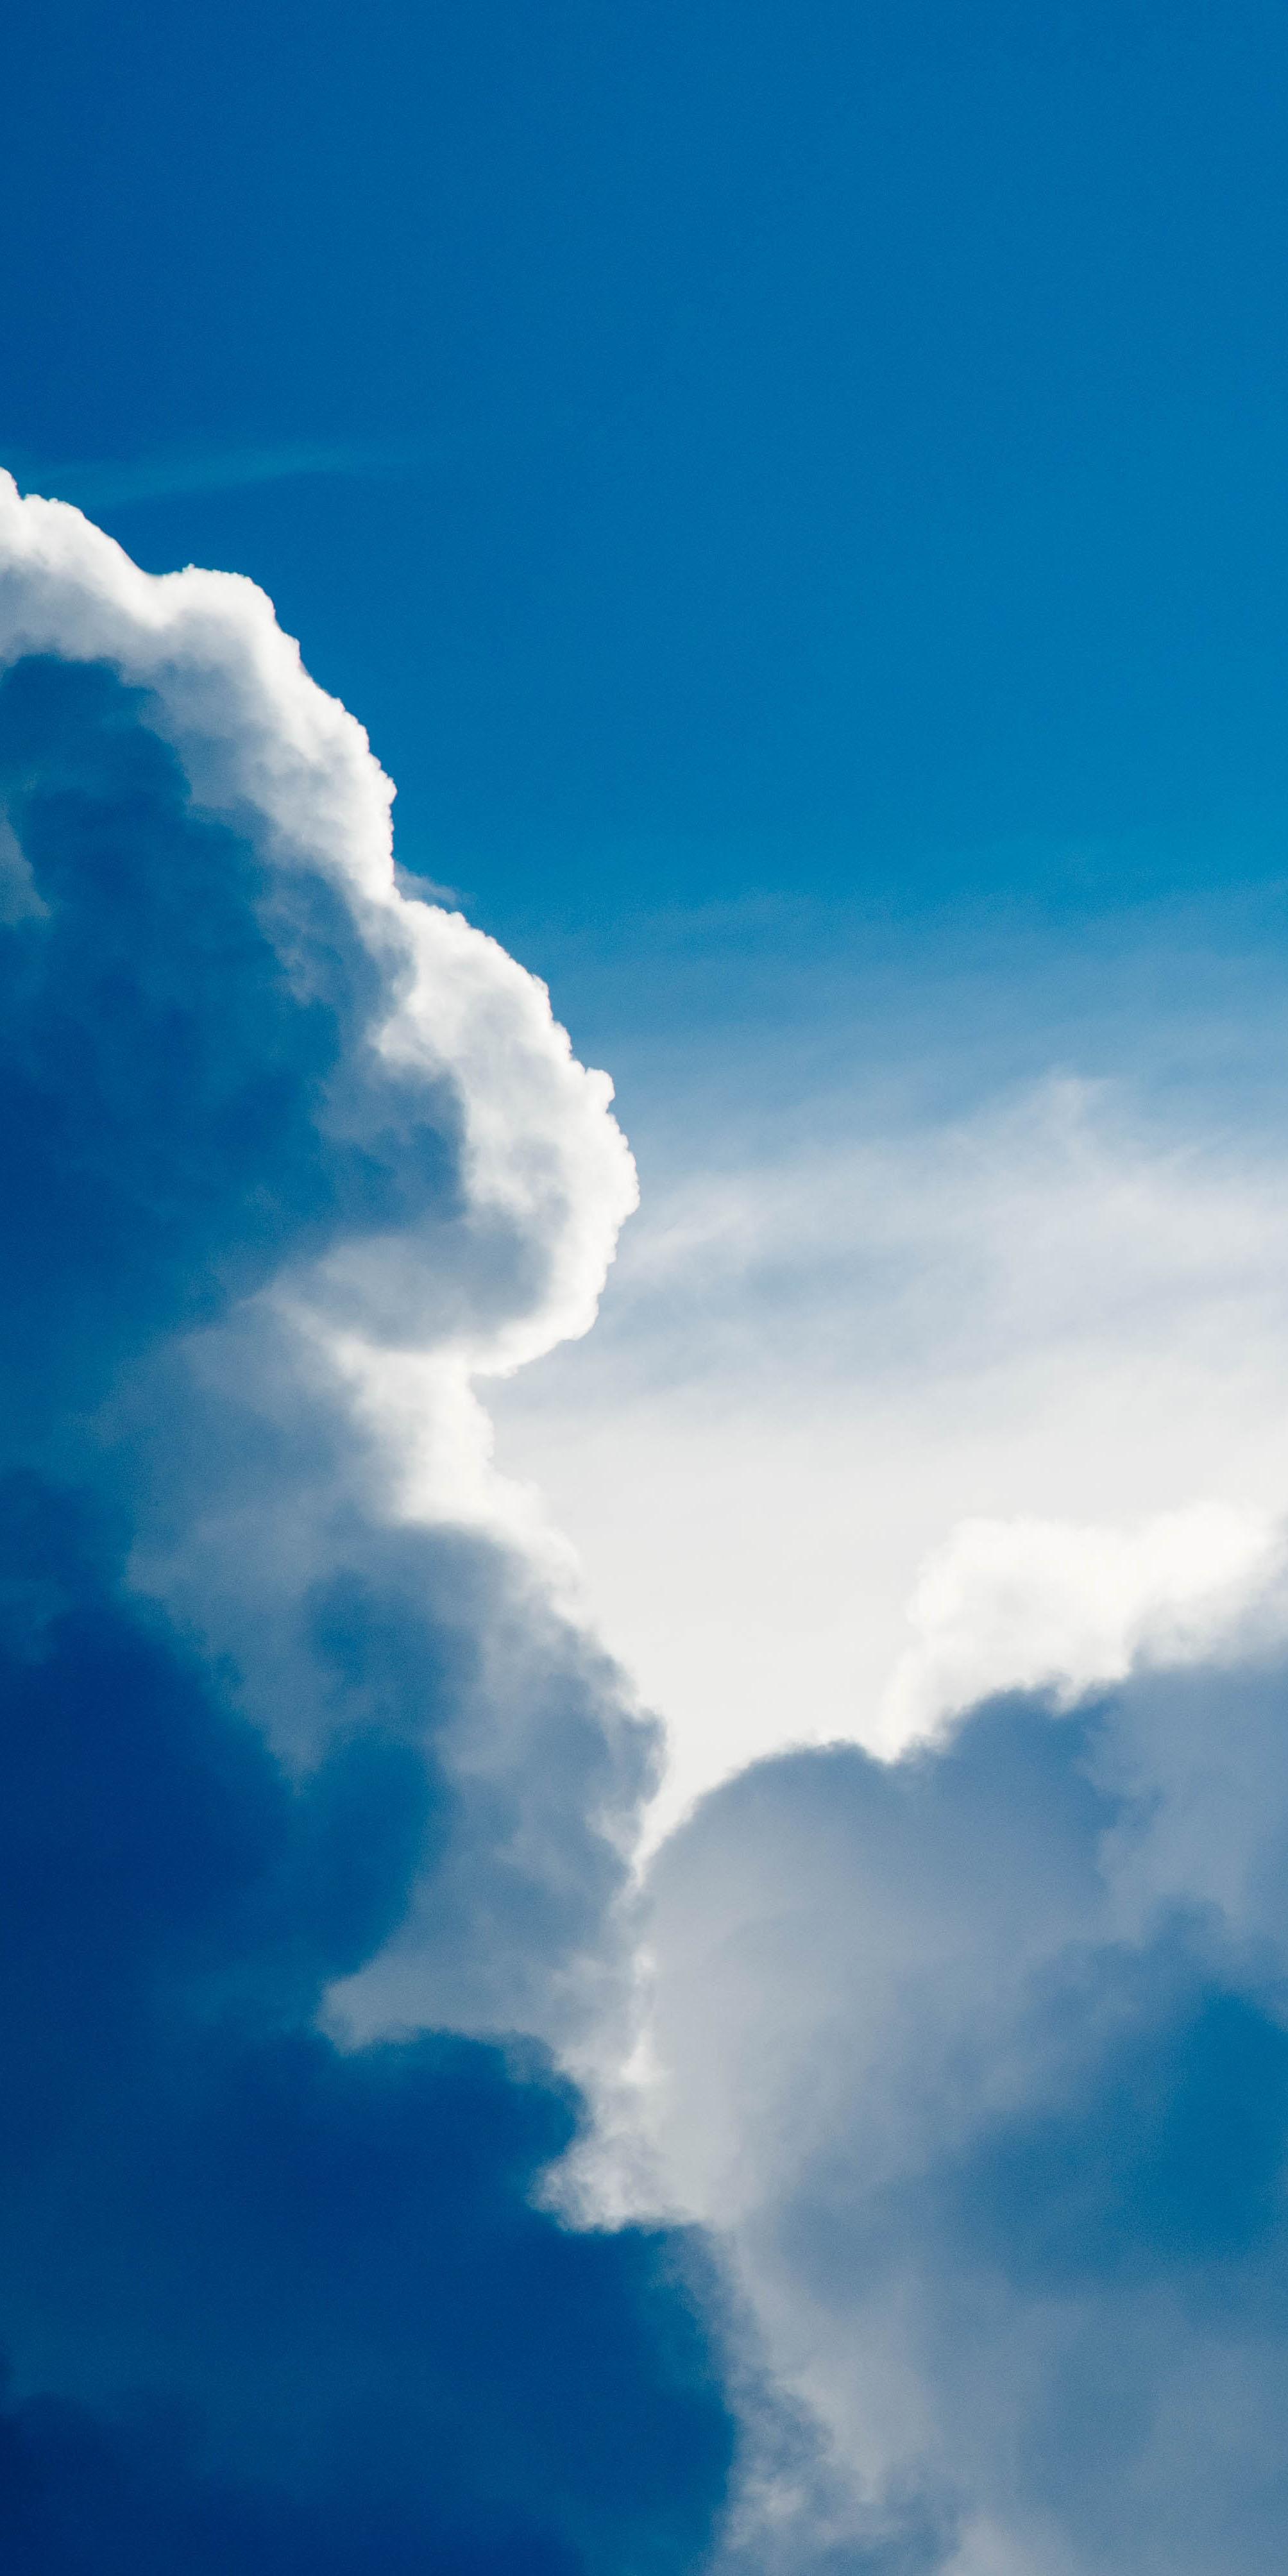 图片素材 : 天空, 阳光, 大气层, 白天, 天堂, 积云, 蓝色, 晴朗, 气象现象, 地球大气 4752x3168 - - 173591 ...